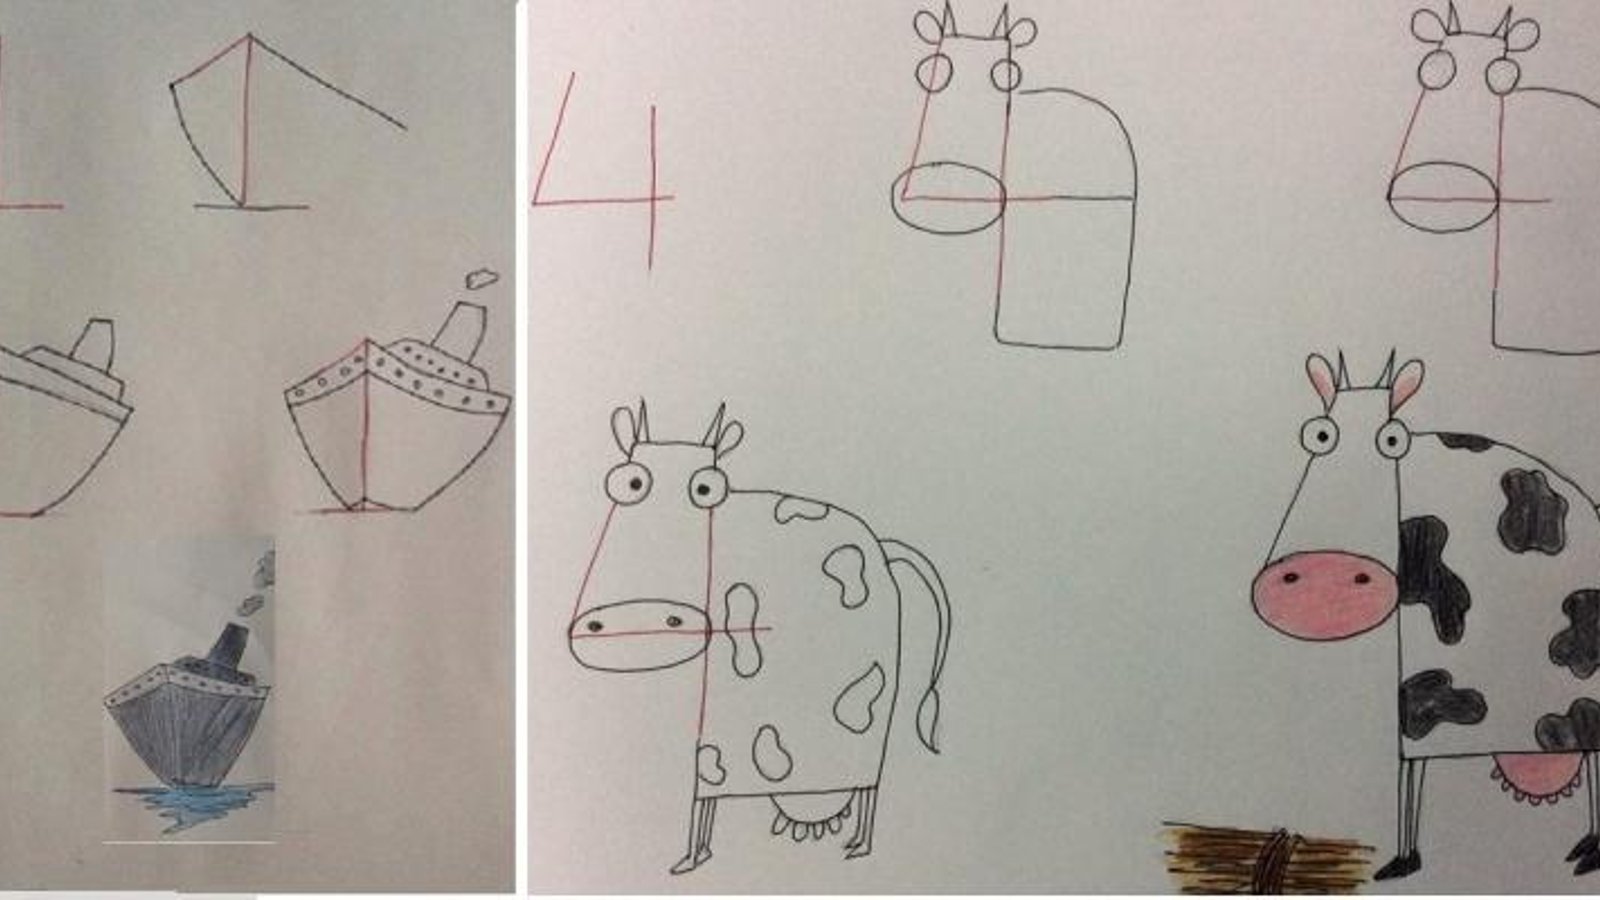 20 Excellentes idées pour dessiner de drôles de dessins avec les enfants, à partir de chiffres! 